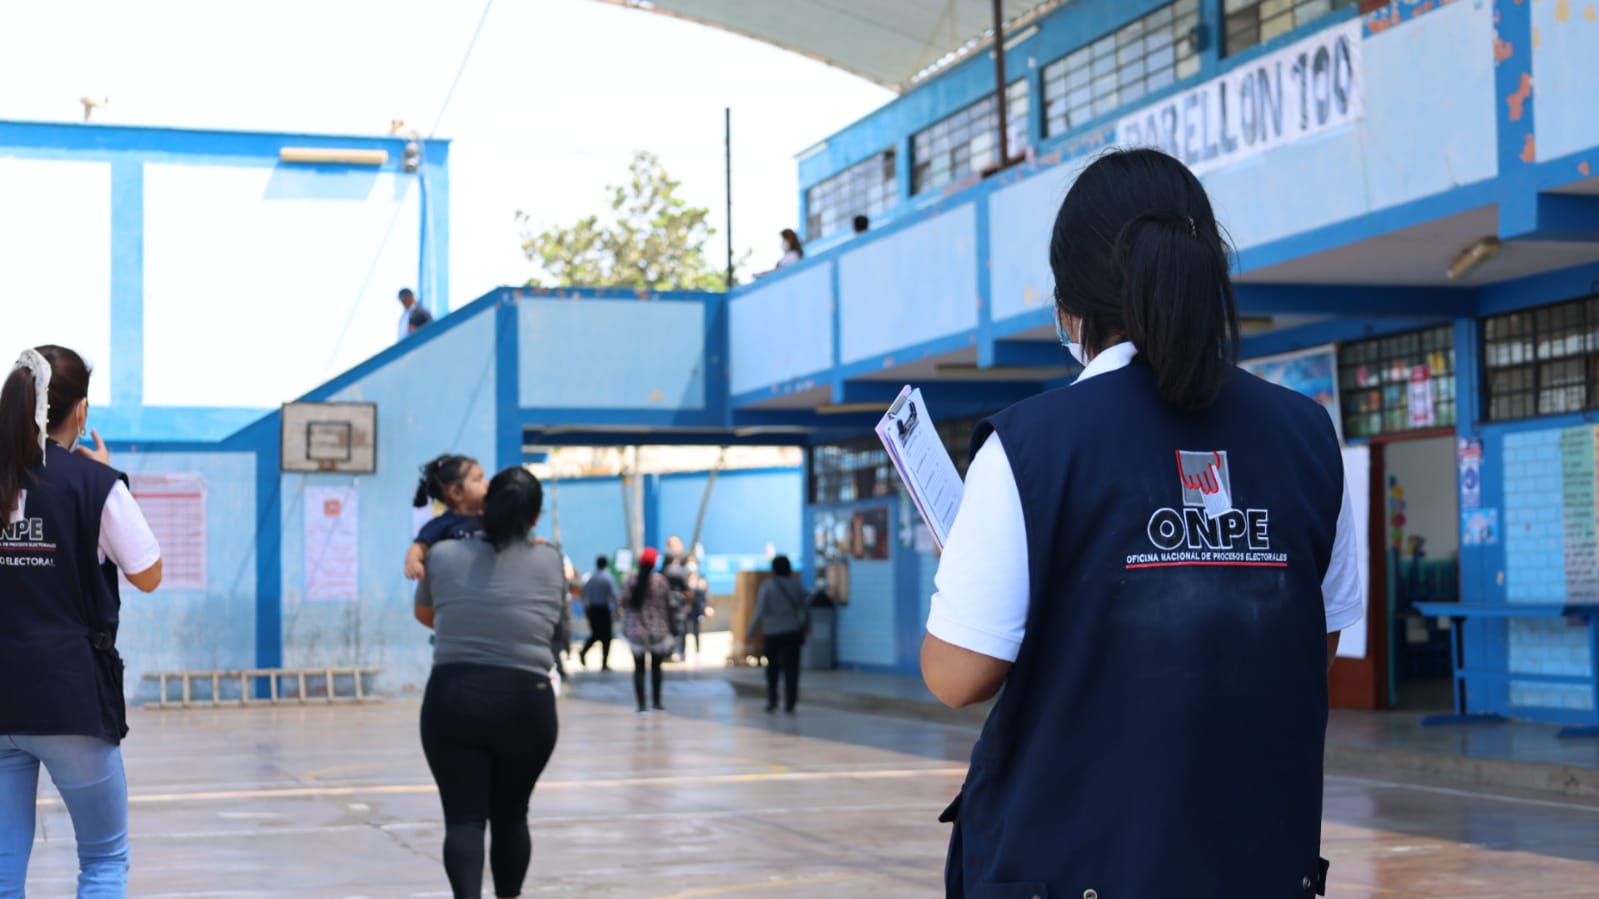 Se realiza la segunda elección regional en la Institución Educativa Nuestra Señora de Fátima, ubicada en la provincia de Huaura, región Lima.